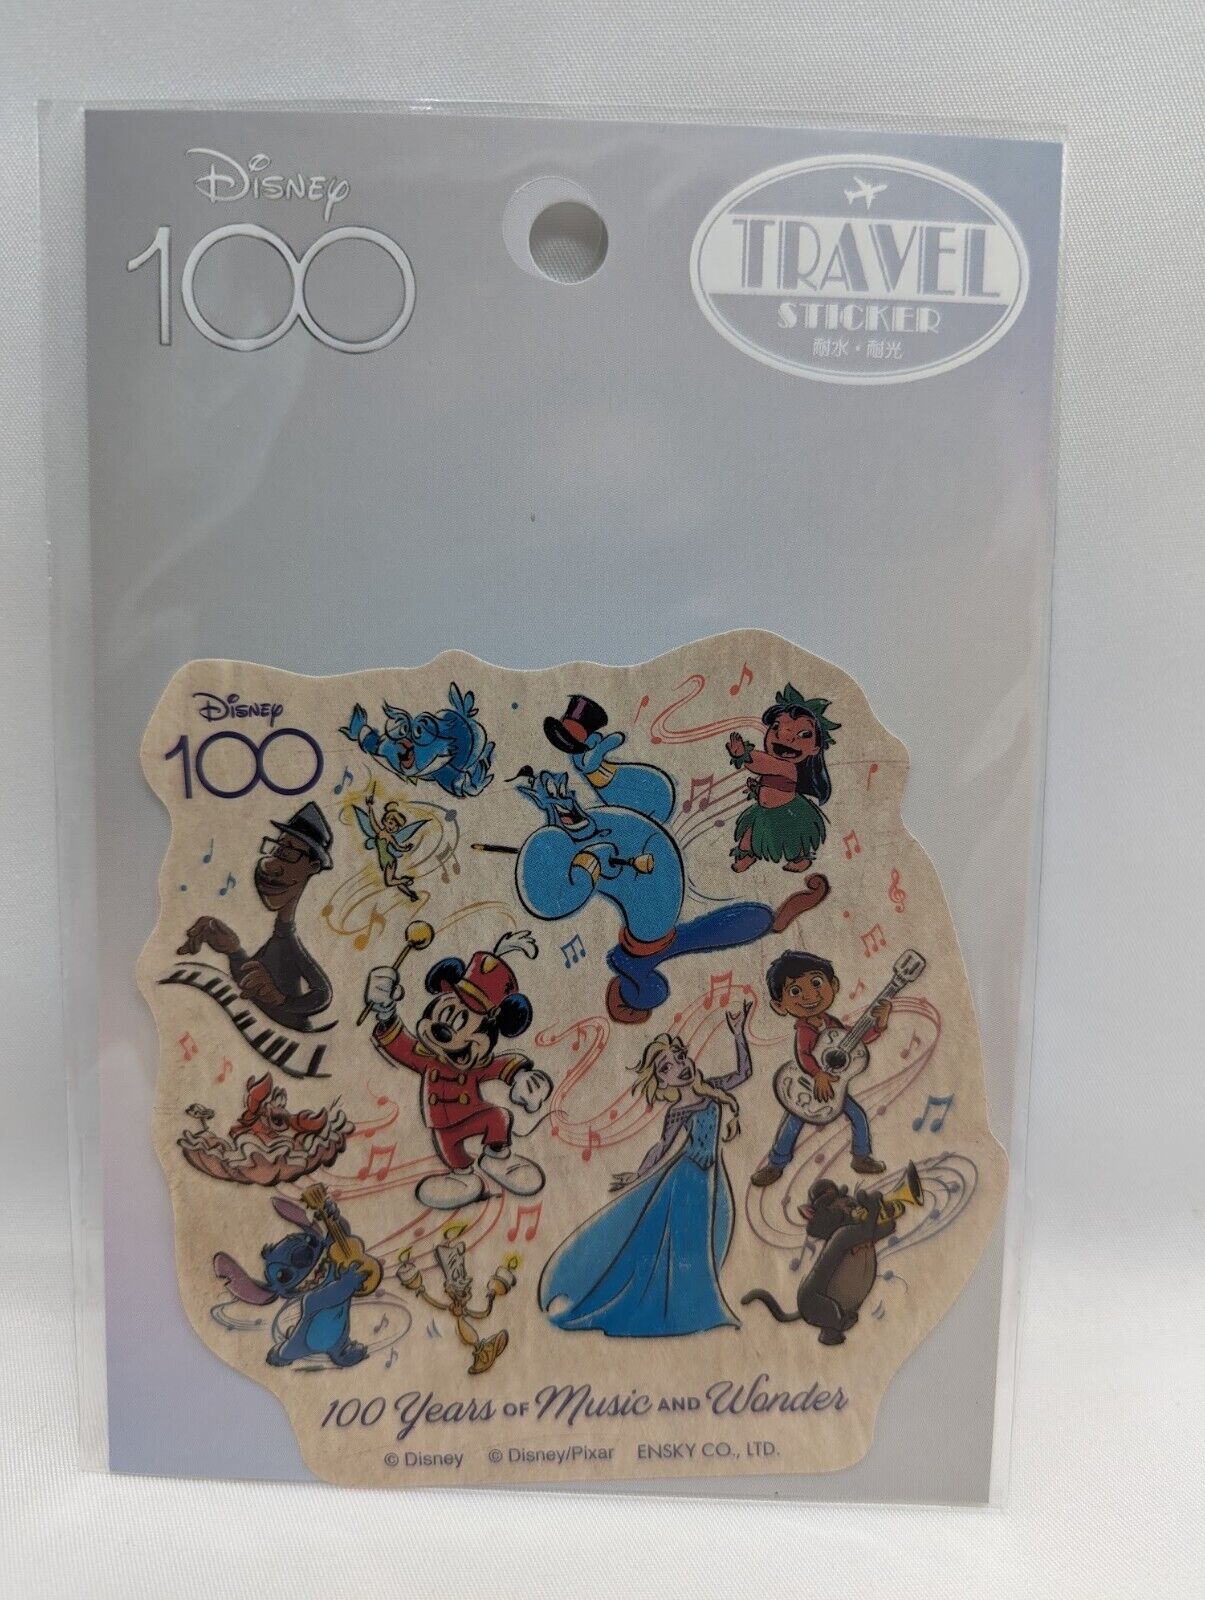 Disney 100th Anniversary 100 Years of Music and Wonder Travel Sticker